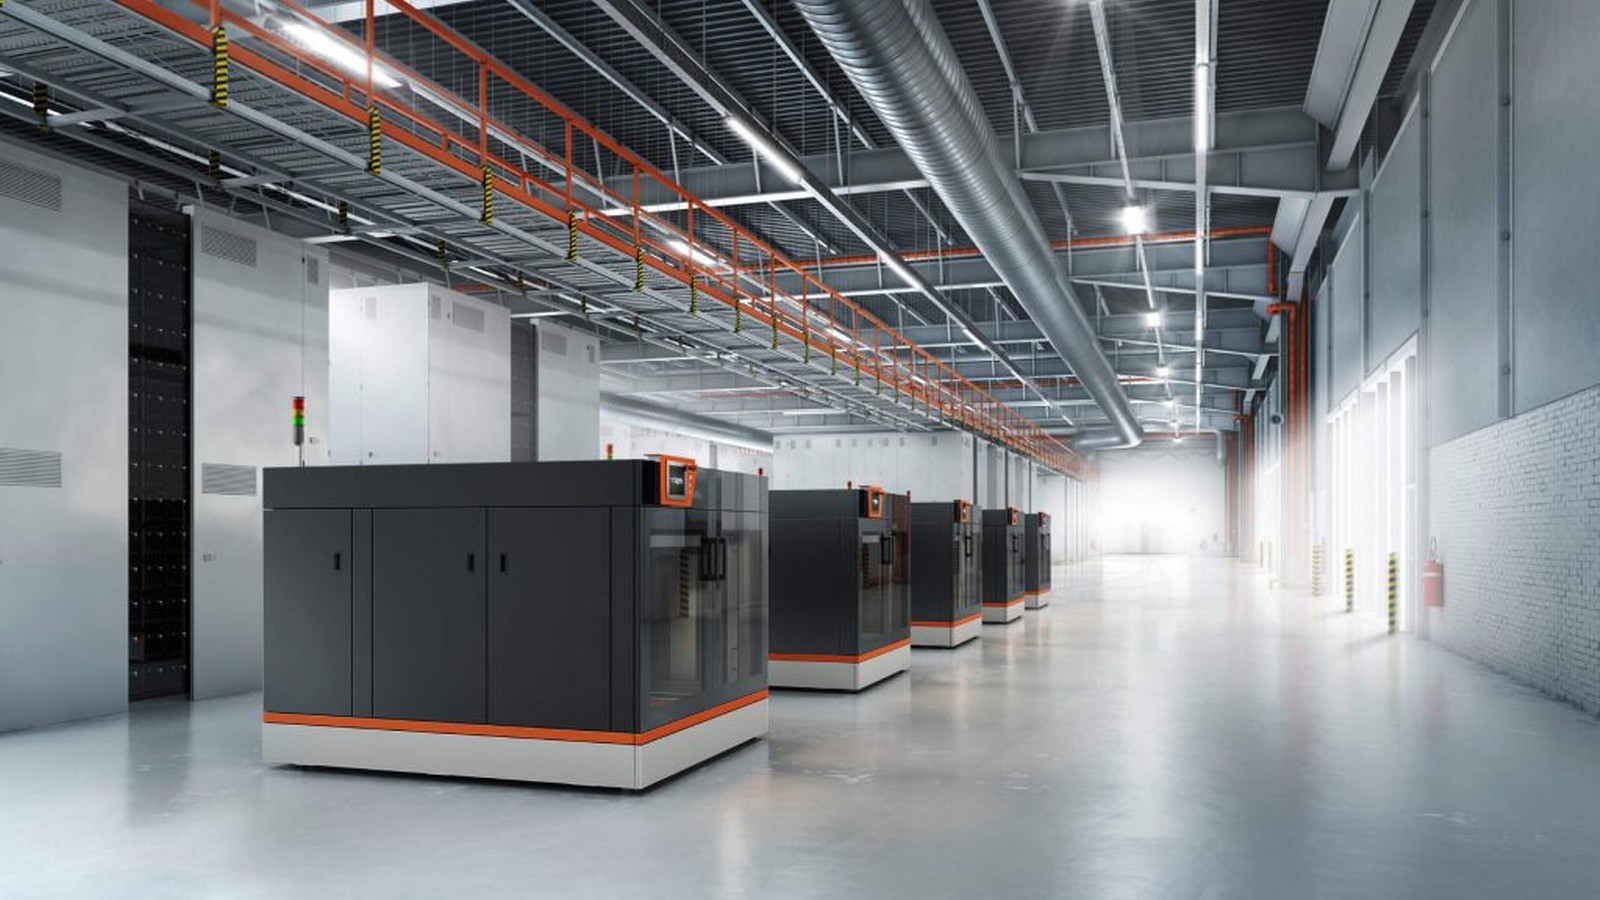 Digitale Produktionslösungen von Bigrep für eine leistungsstarke additive Fertigung in der Industrie: Das Unternehmen gibt die Auslieferung seines 500. industriellen 3D-Druckers im Großformat bekannt. 